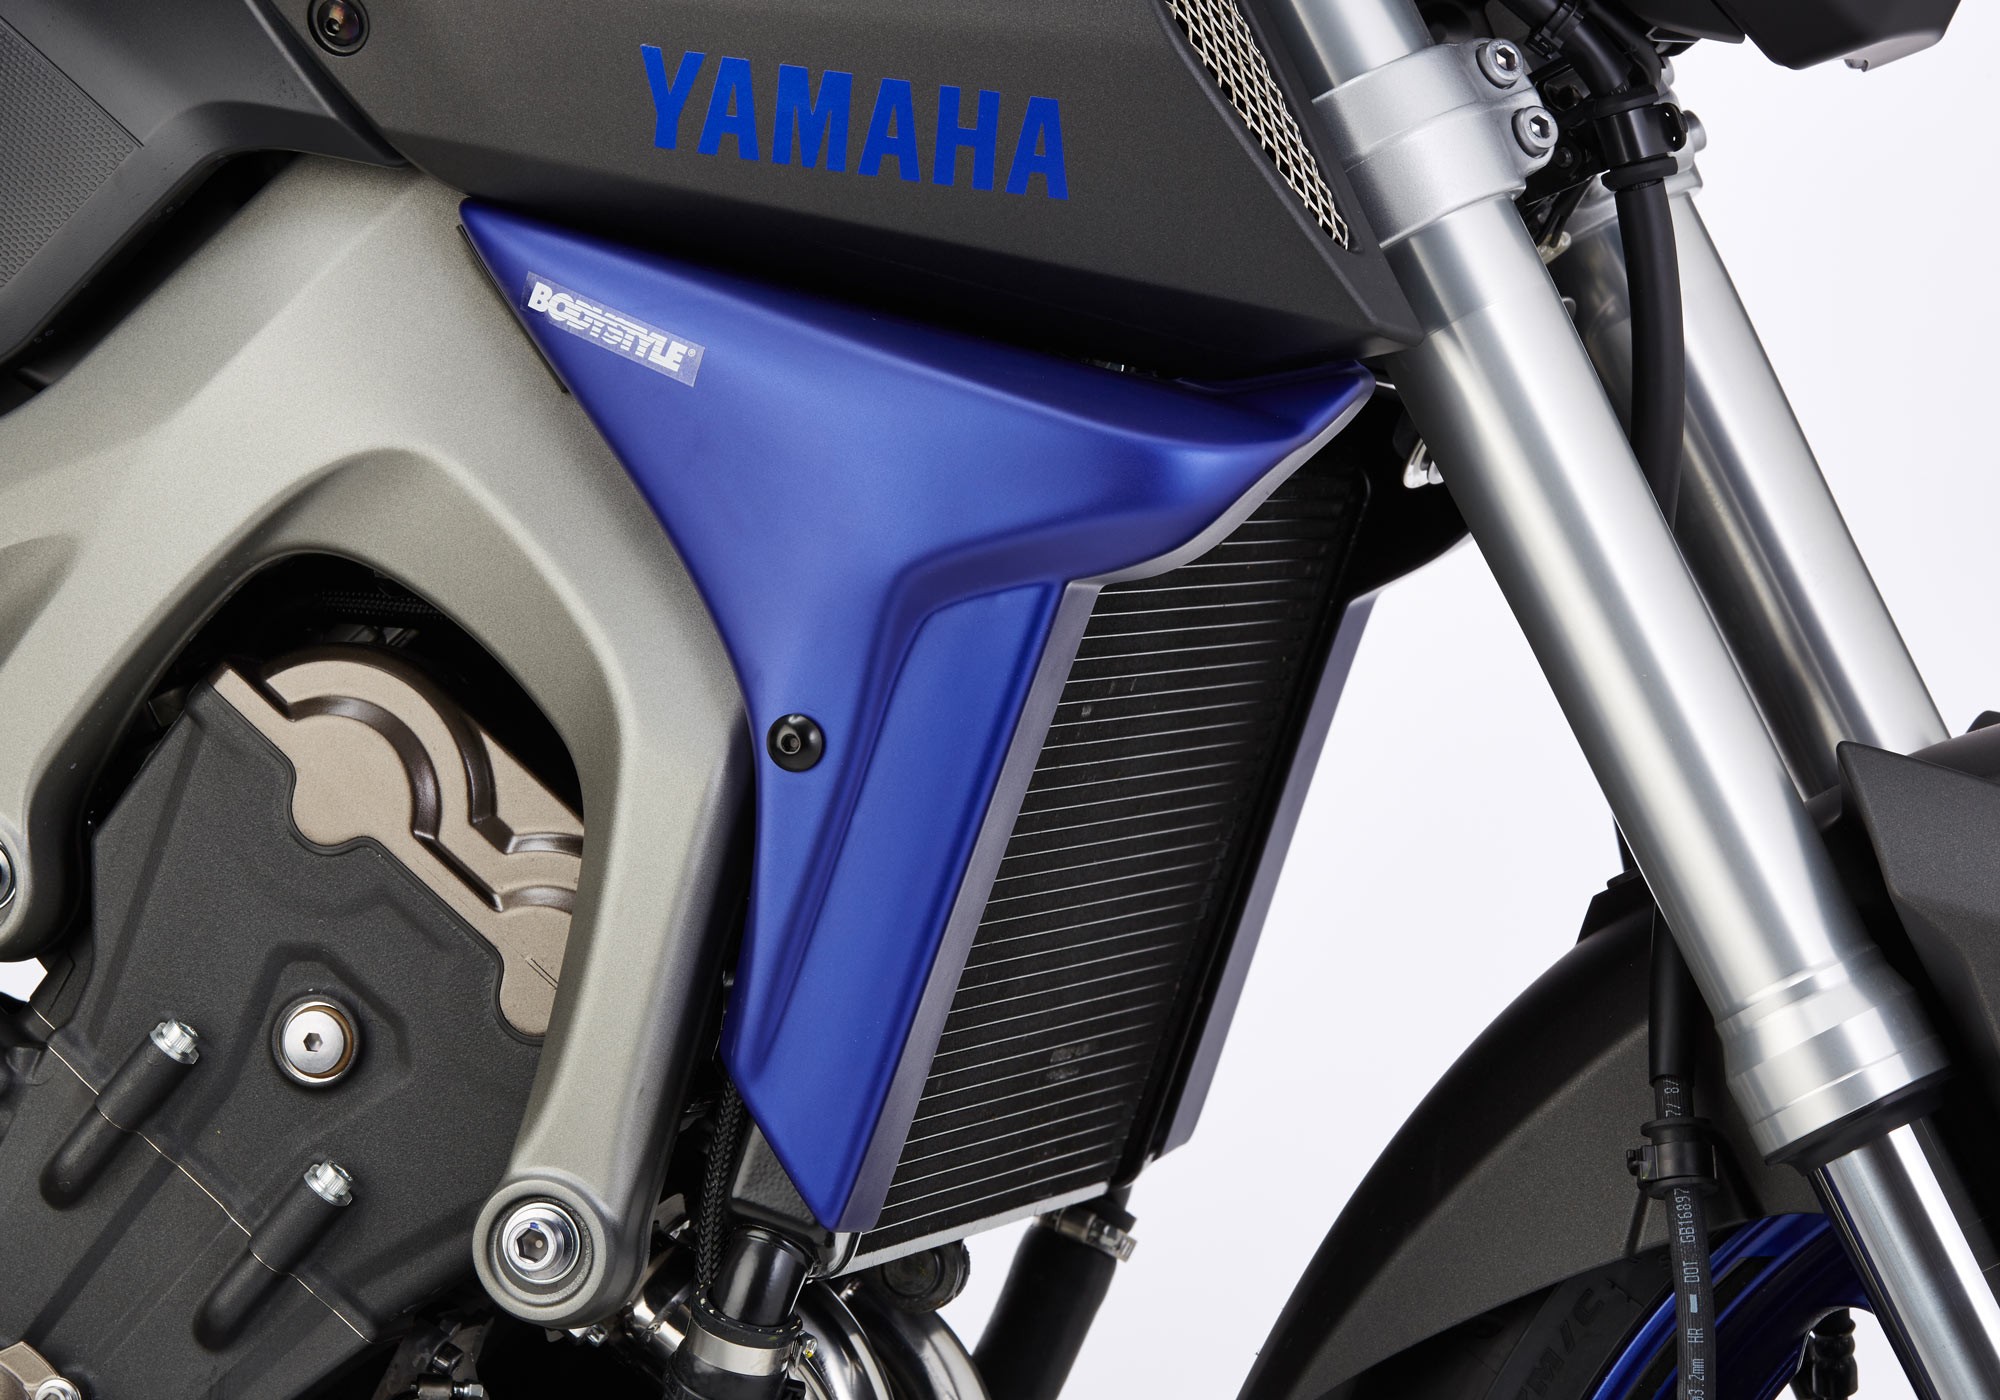 BODYSTYLE Sportsline Kühlerseitenverkleidung unlackiert passt für Yamaha MT-09